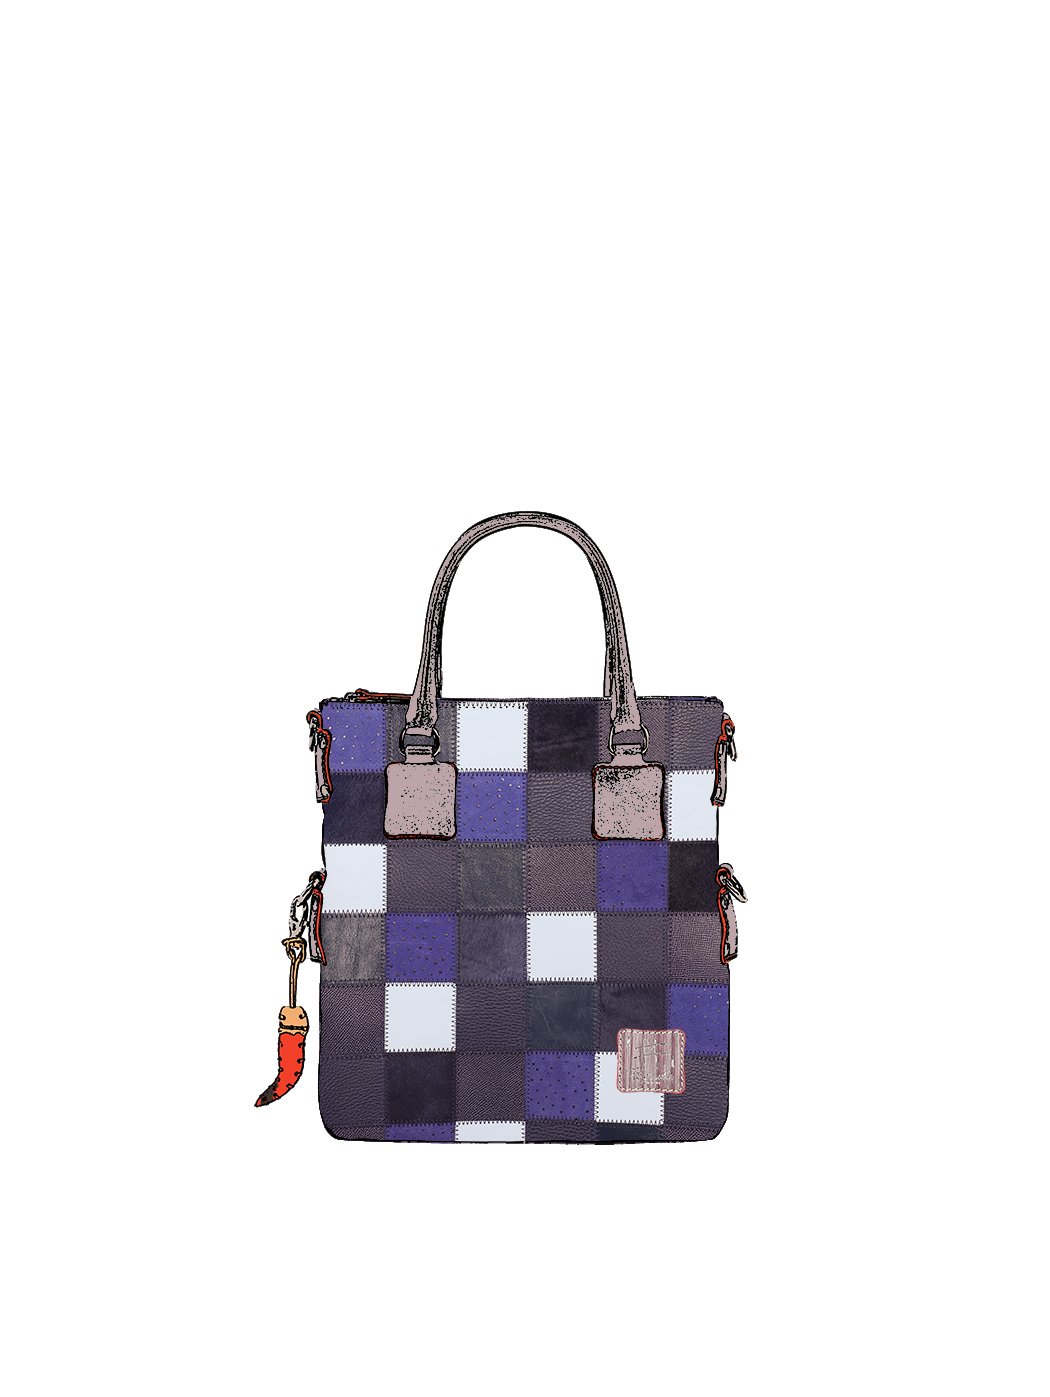 Дизайнерская мини - сумка из коллекции Fortunata в стиле пэчворк сине - серого цвета